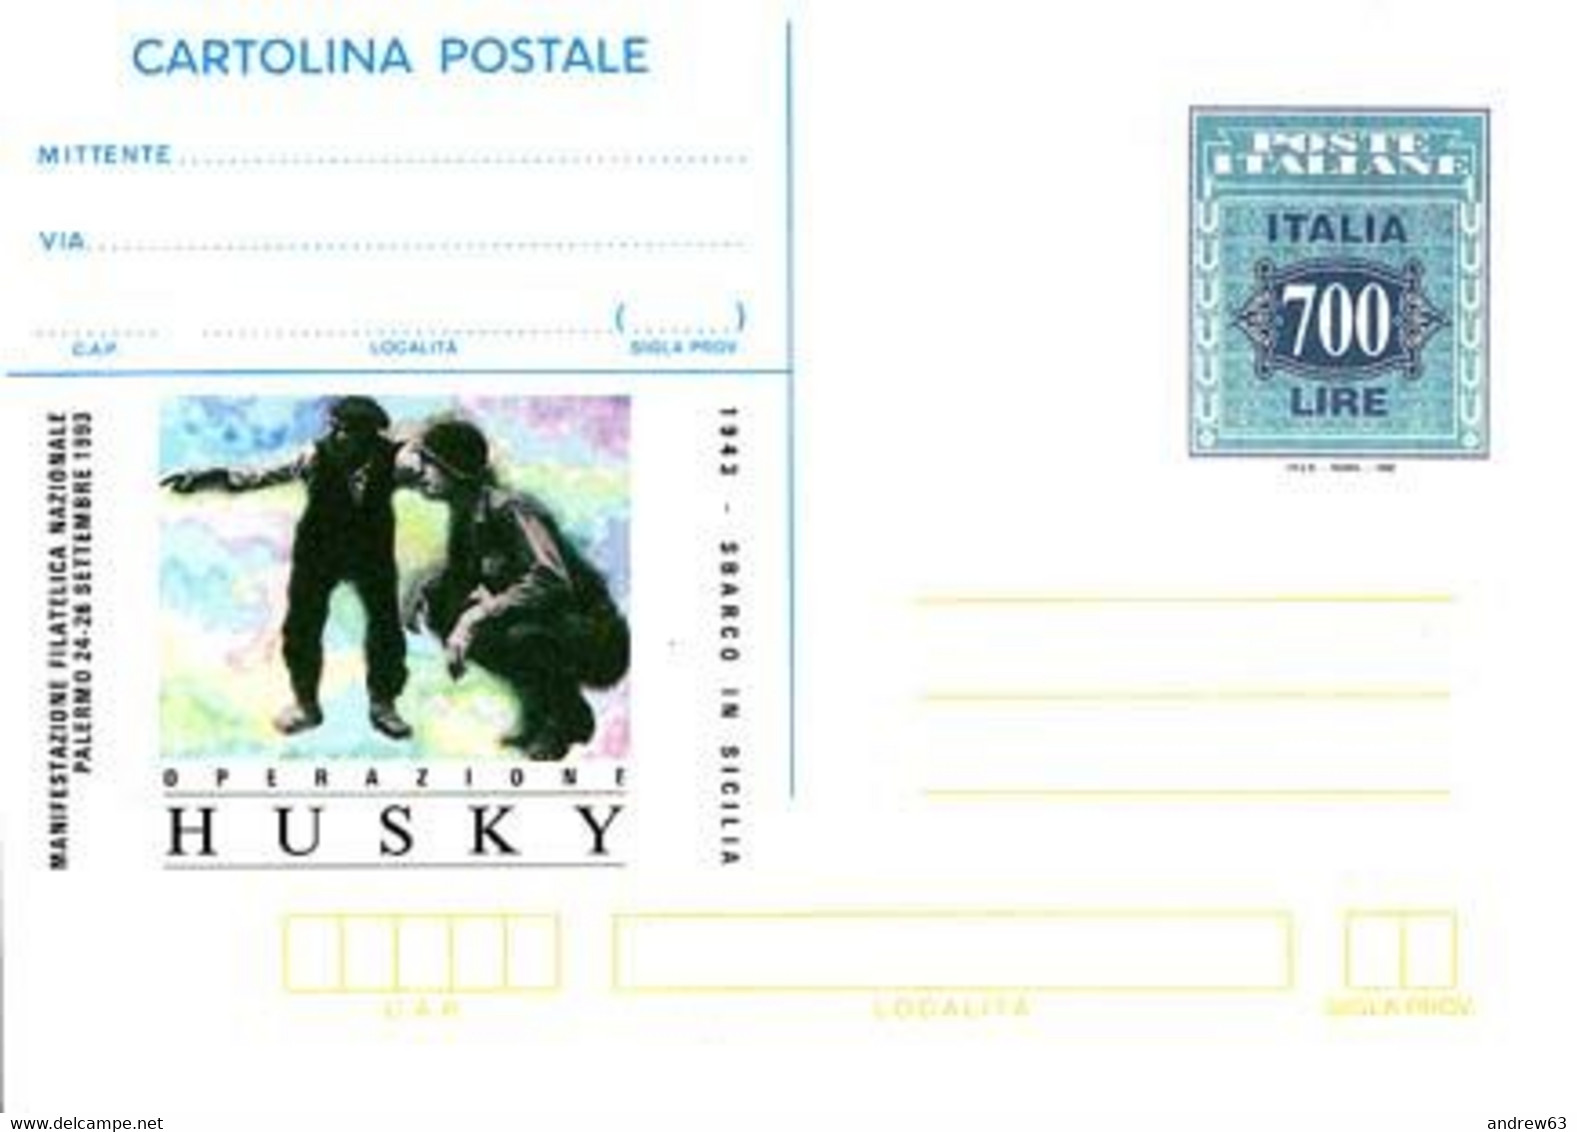 ITALIA - REPUBBLICA ITALIANA - 1993 - CP228 - 700 Operazione Husky - Cartolina Postale - Intero Postale - NUOVO - Interi Postali